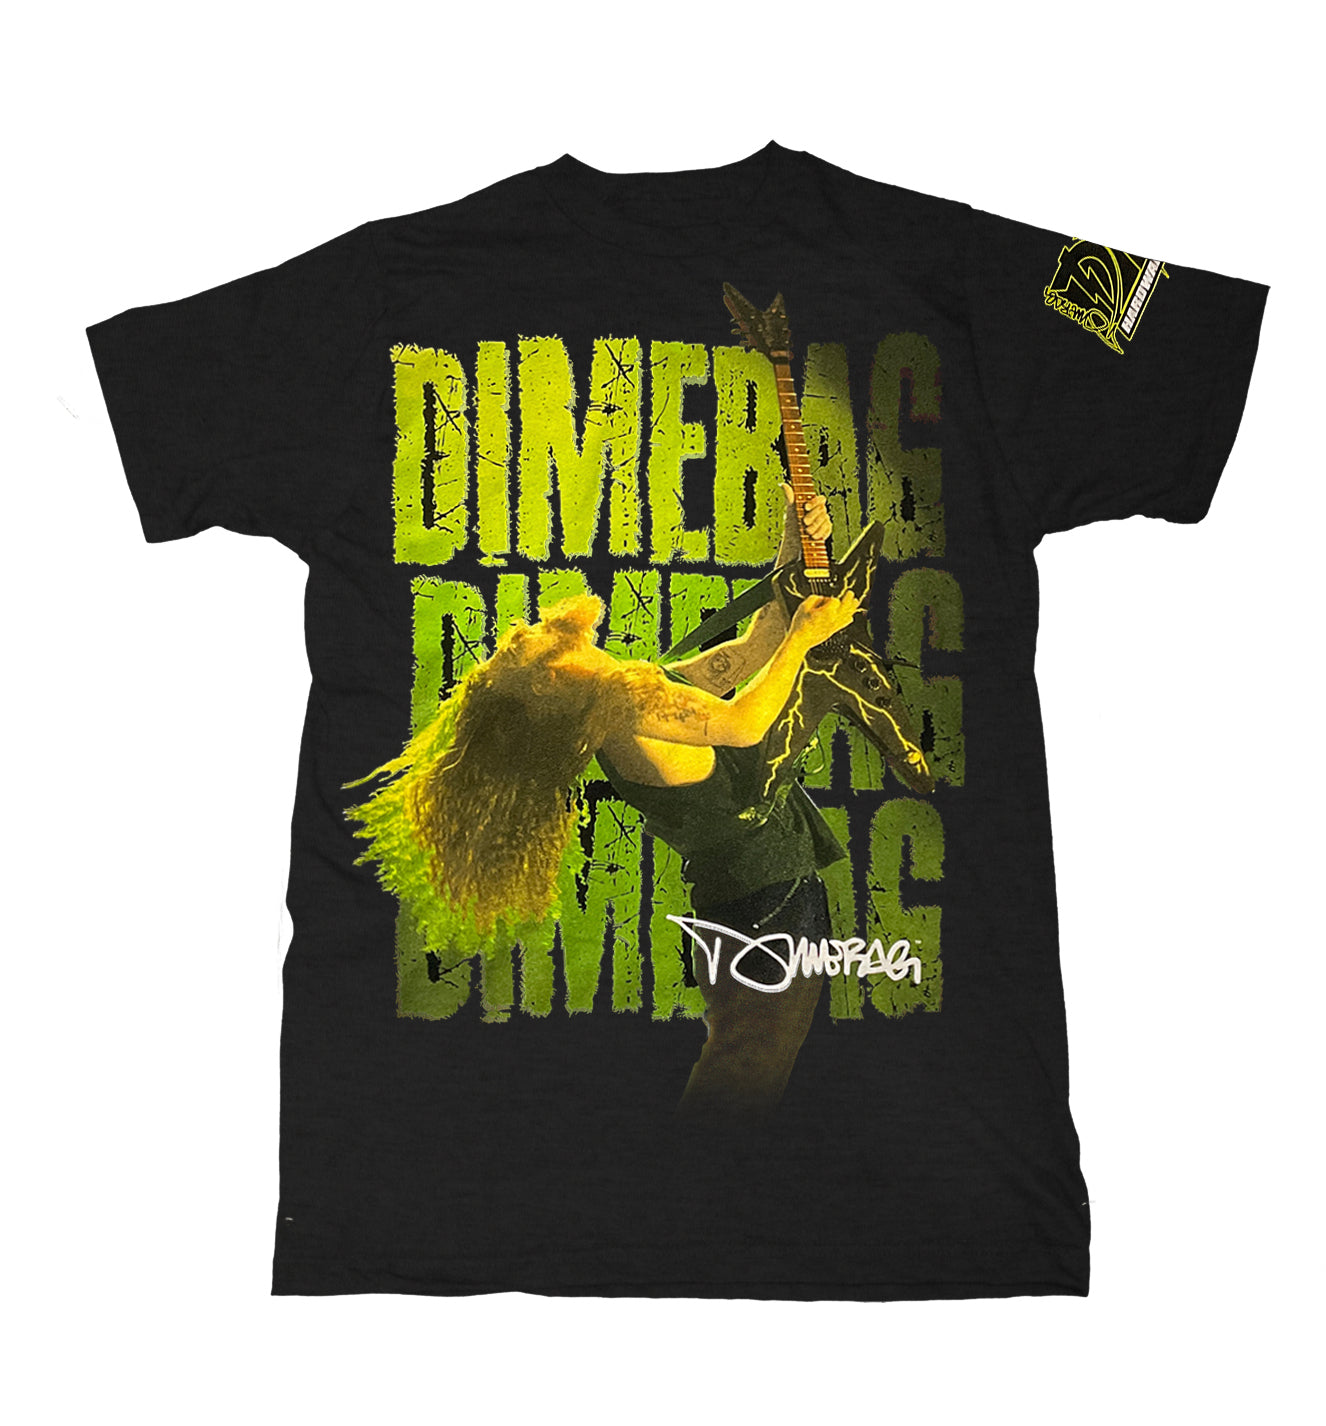 Dimebag Darrell Becoming -  T shirt - Brand New Design